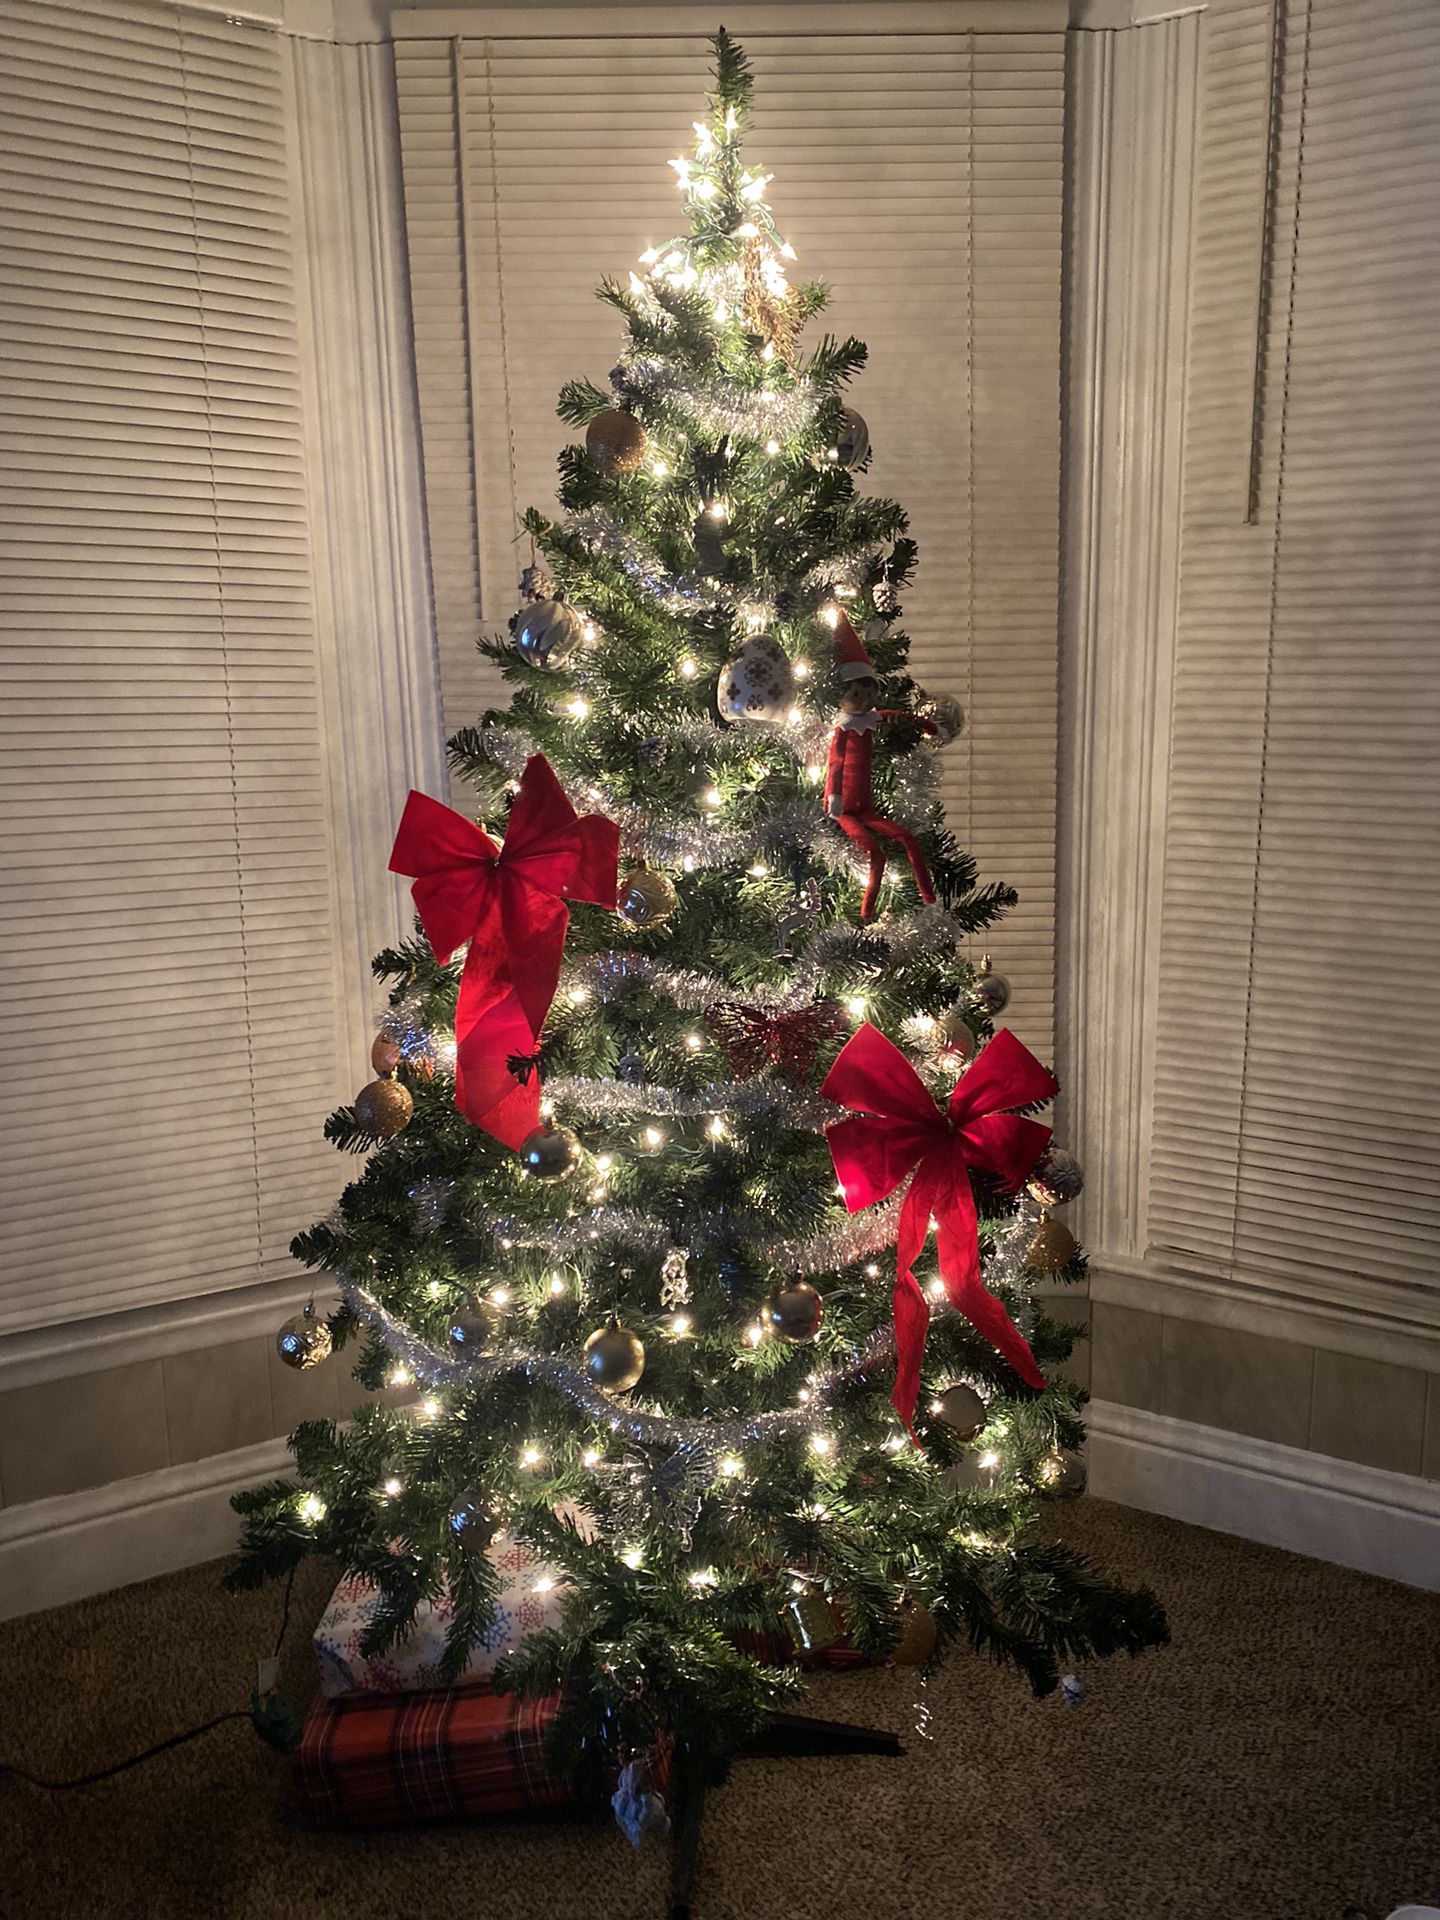 6.5ft Christmas Tree